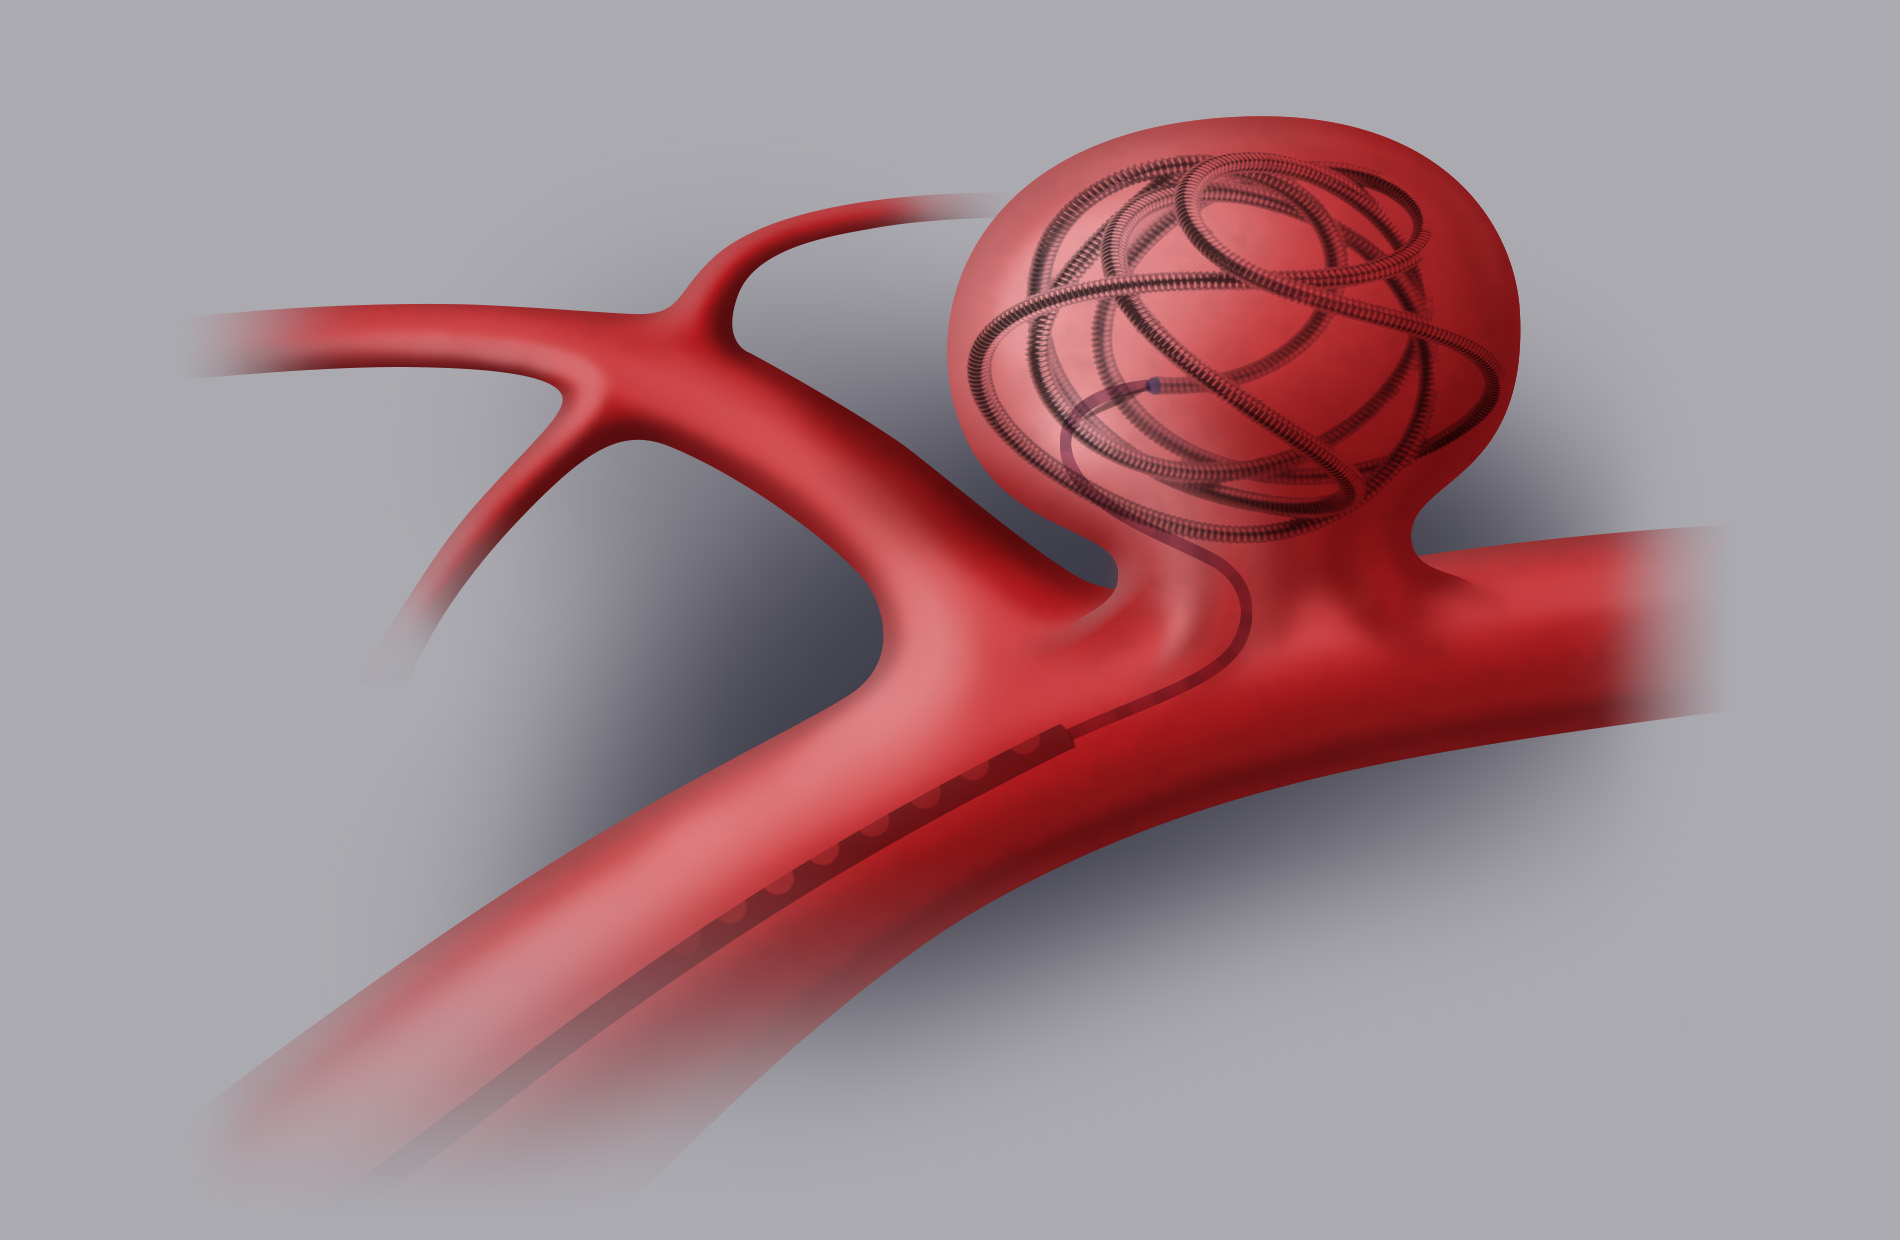 Trattamento endovascolare (coiling-stenting). Tramite introduzione di un microcatetere e sotto guida angiografica vengono rilasciate delle micro spirali (coils) all’interno dell’aneurisma. 